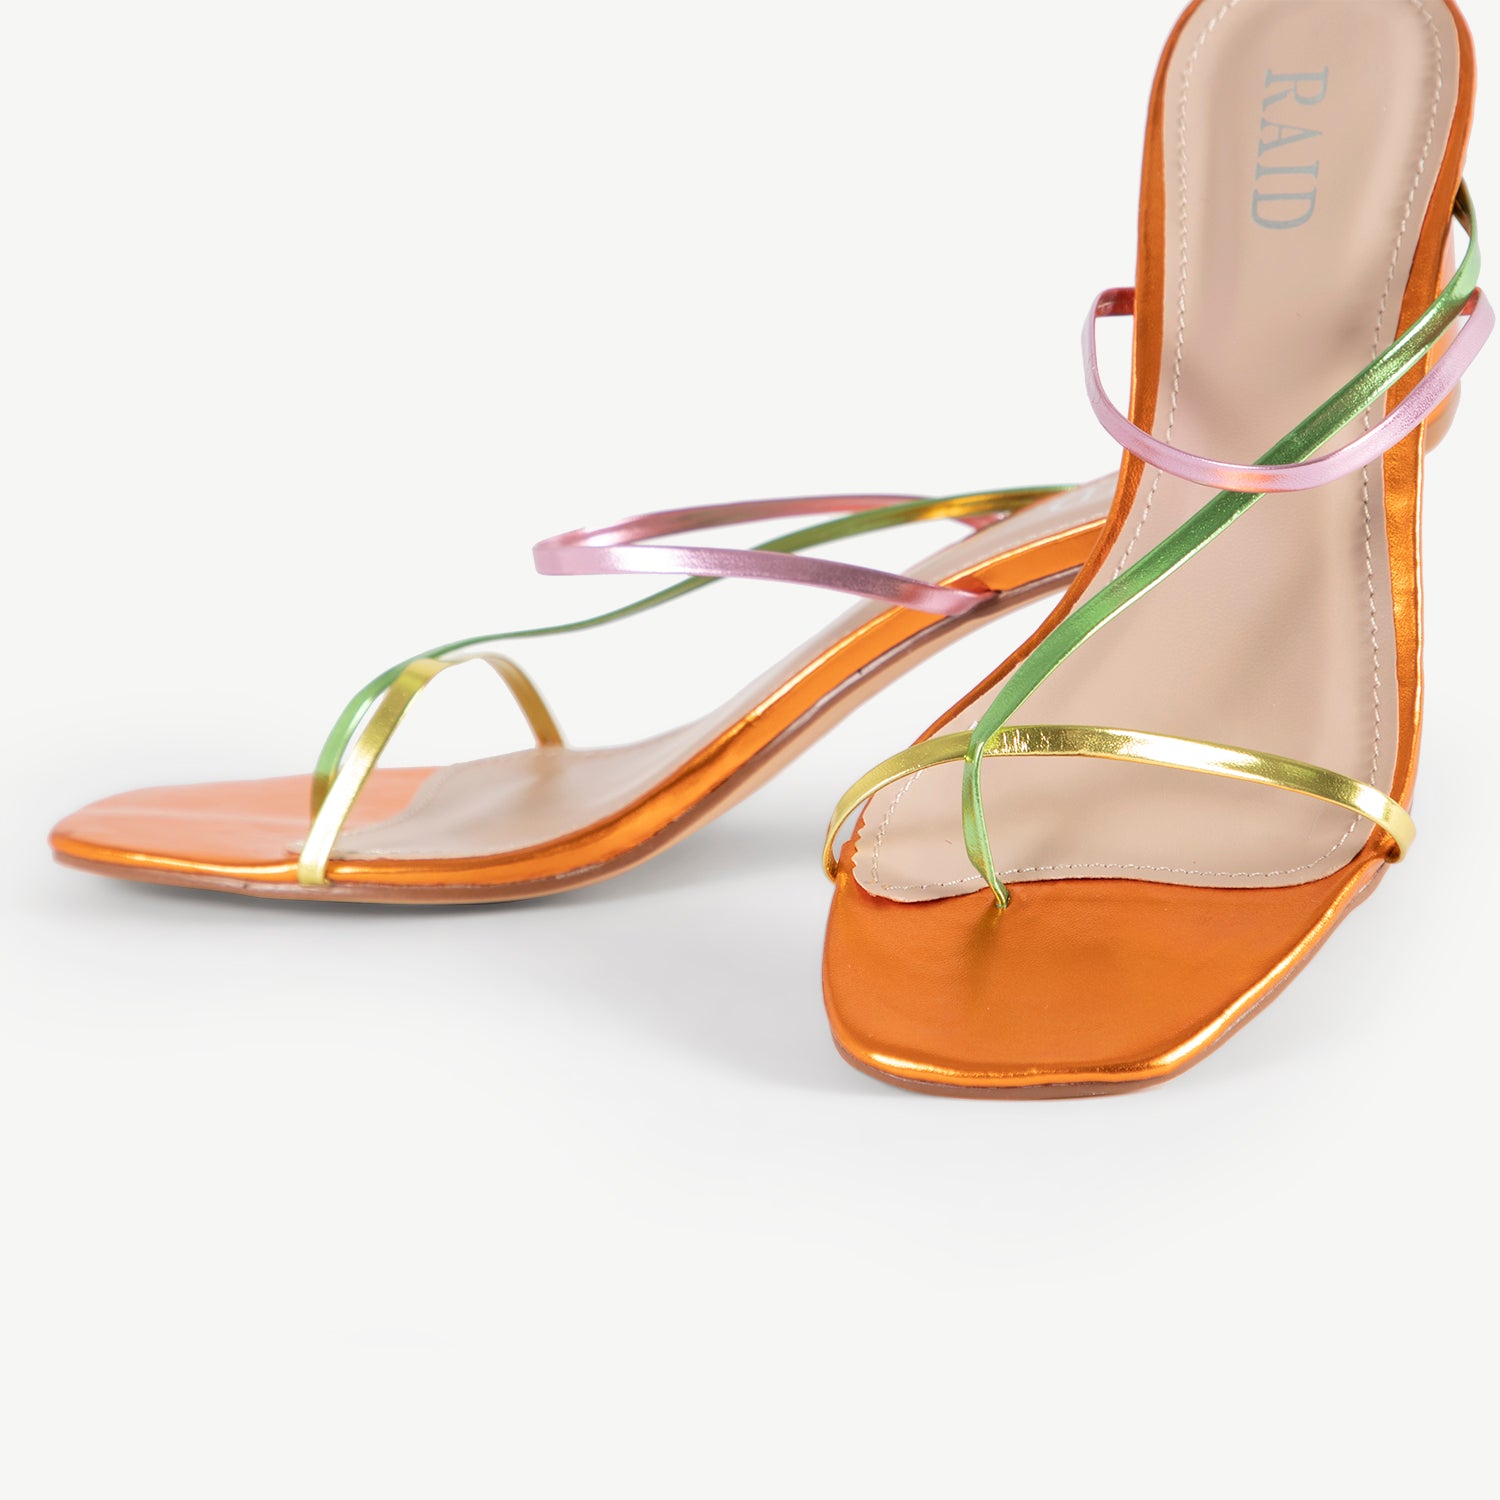 RAID Brioni Heeled Sandal in Orange Multi